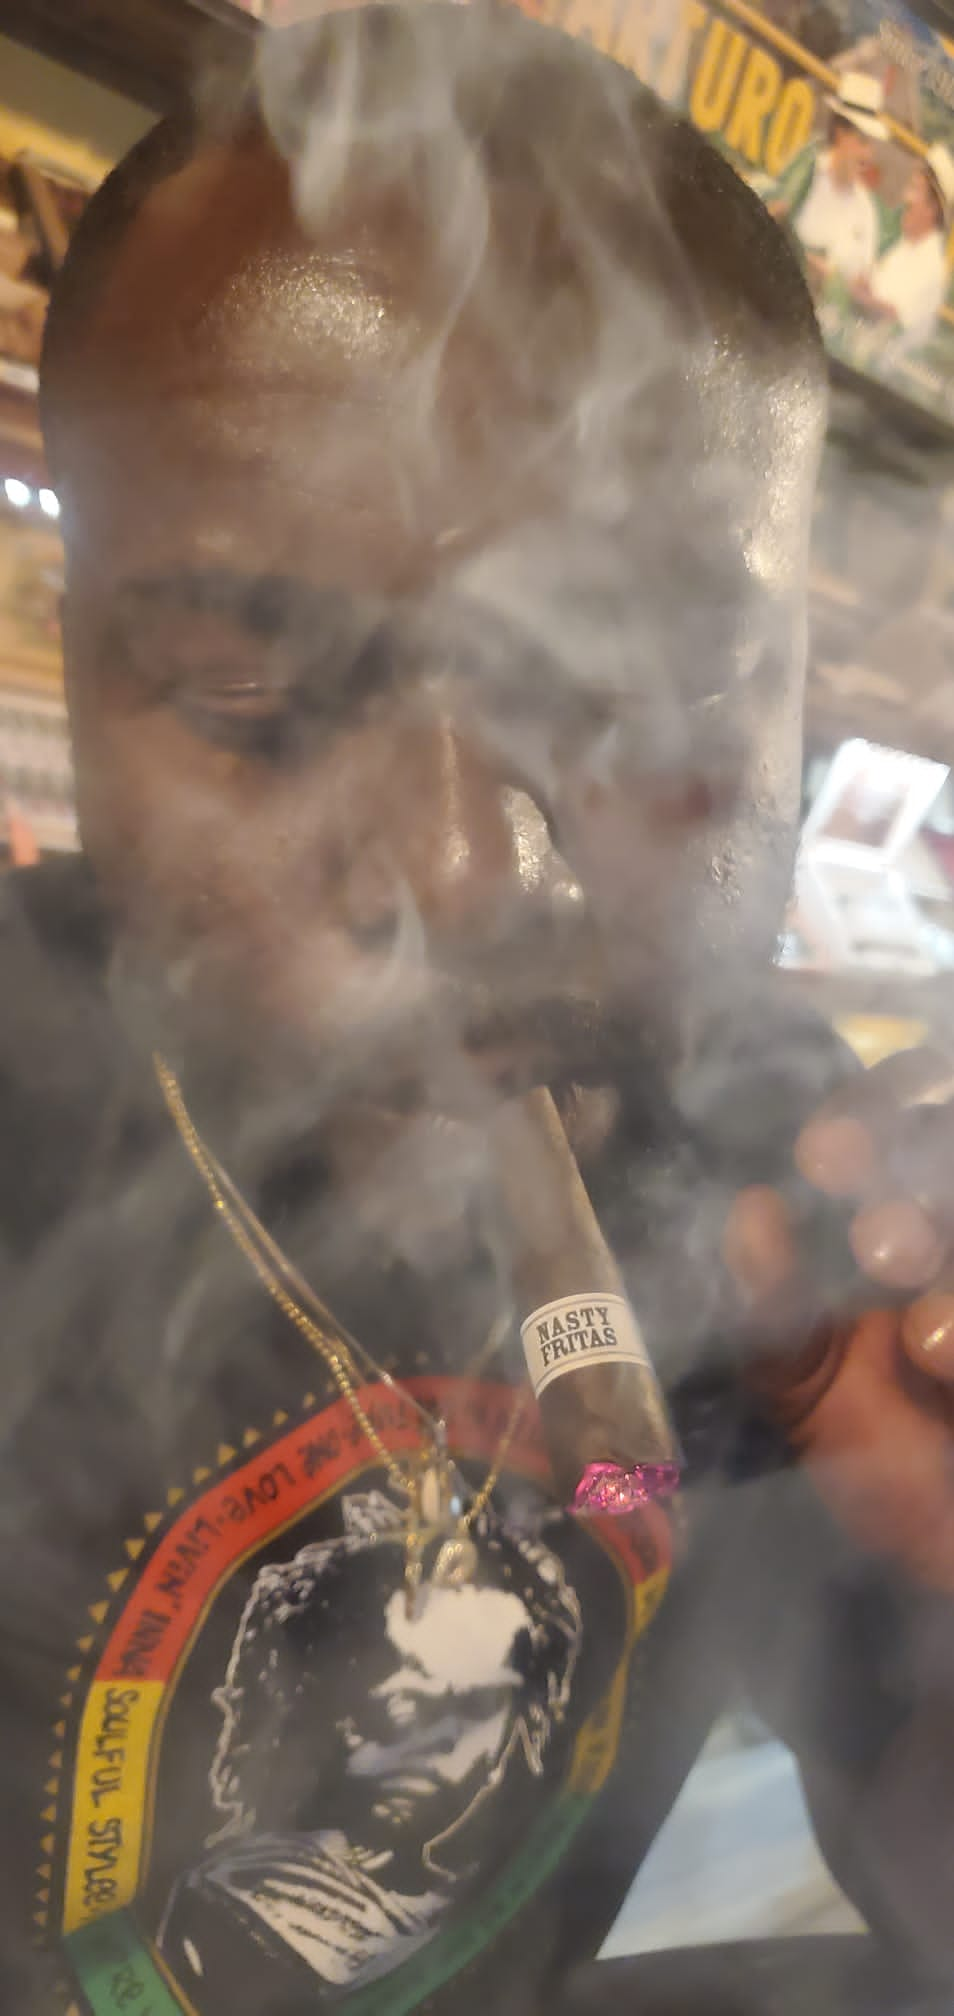 A man smoking a Liga Privada Nasty Fritas cigar